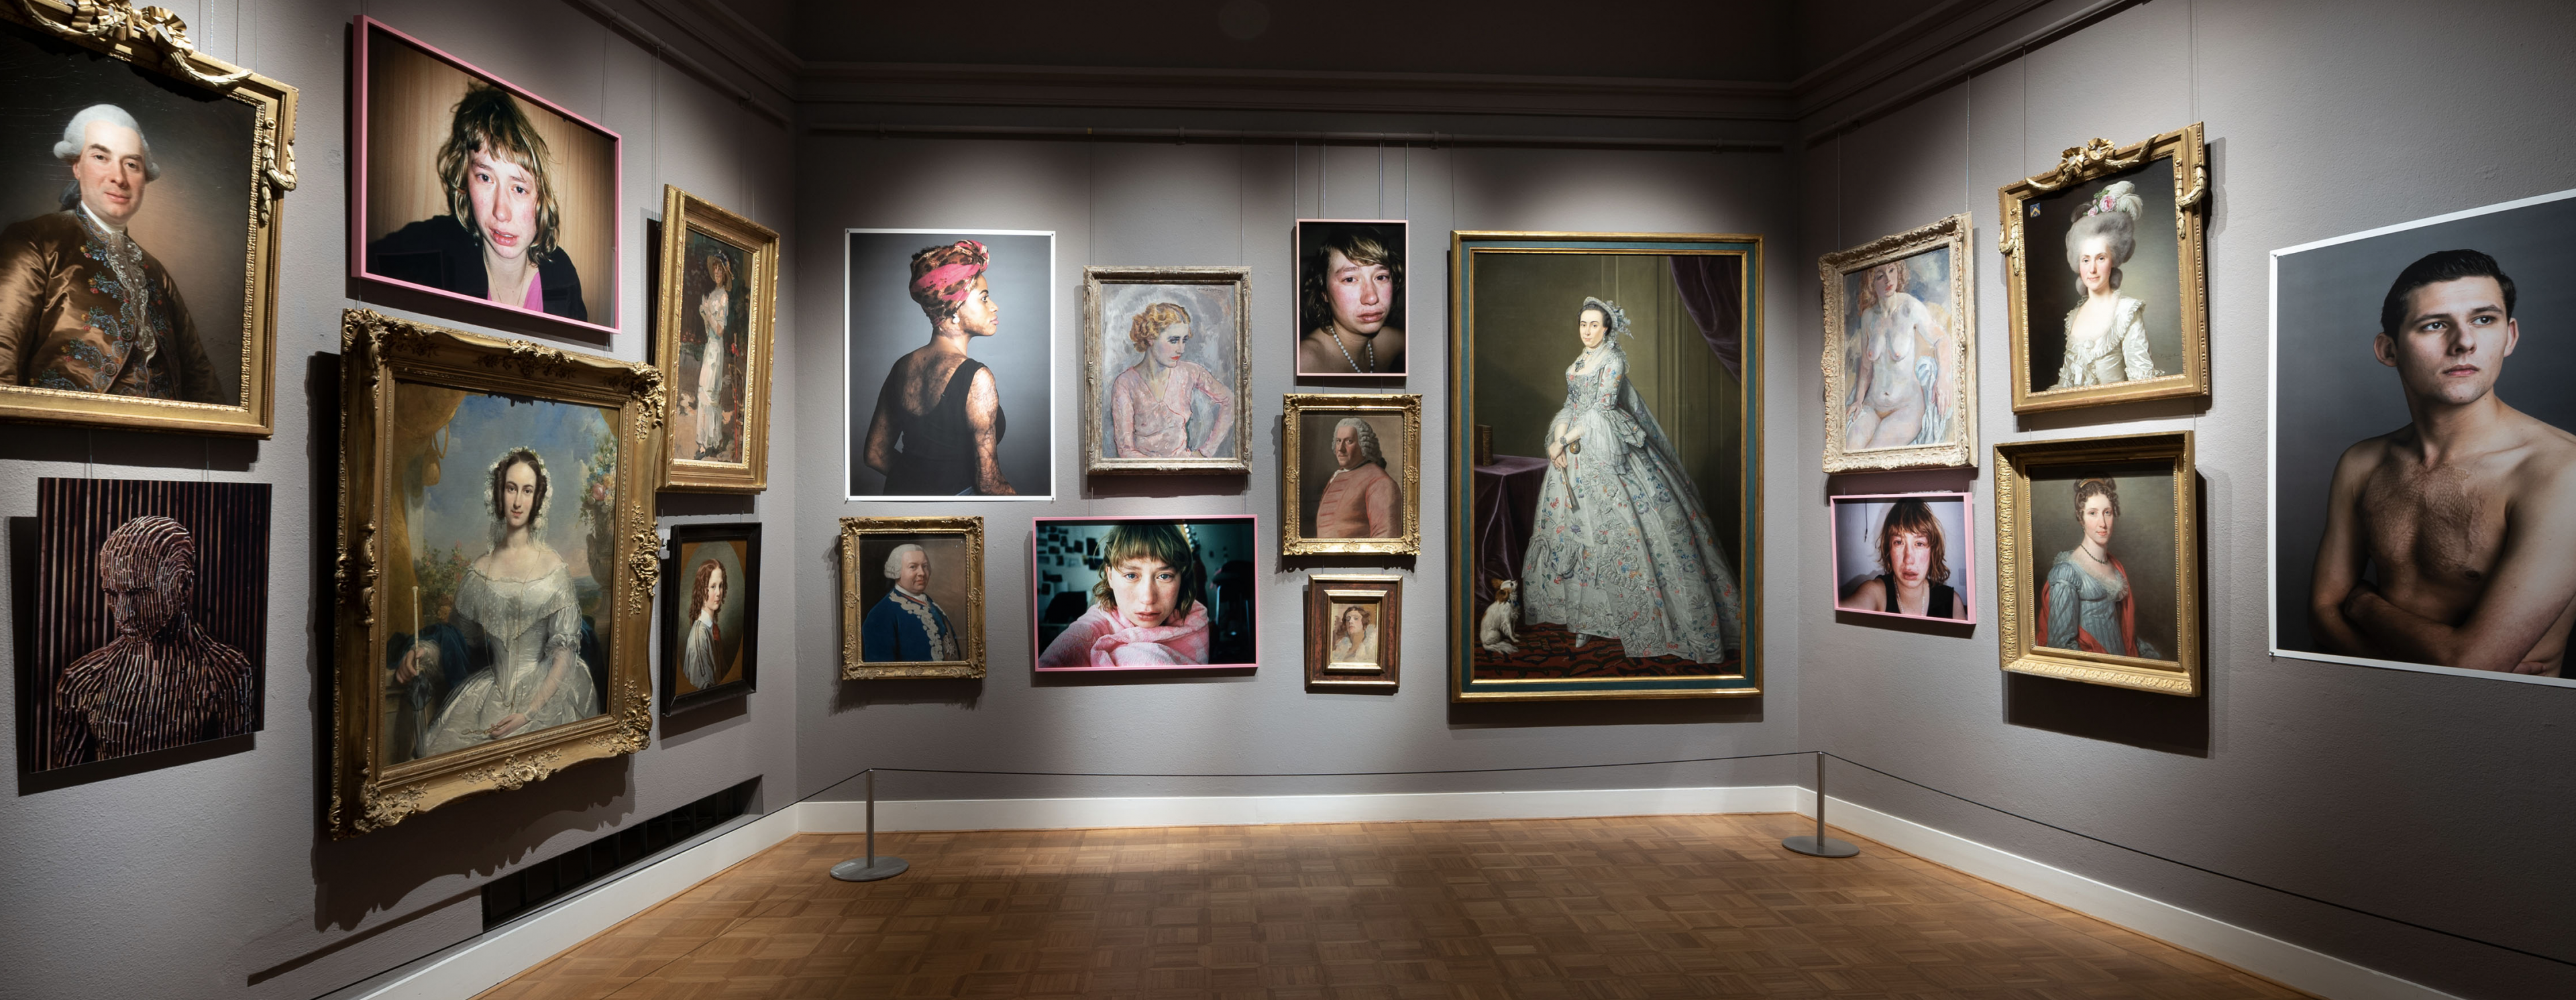 Ein gutes Beispiel für eine Kunstsammlung zeitgenössischer und klassischer „Porträts“ im Rijksmuseum van Twente